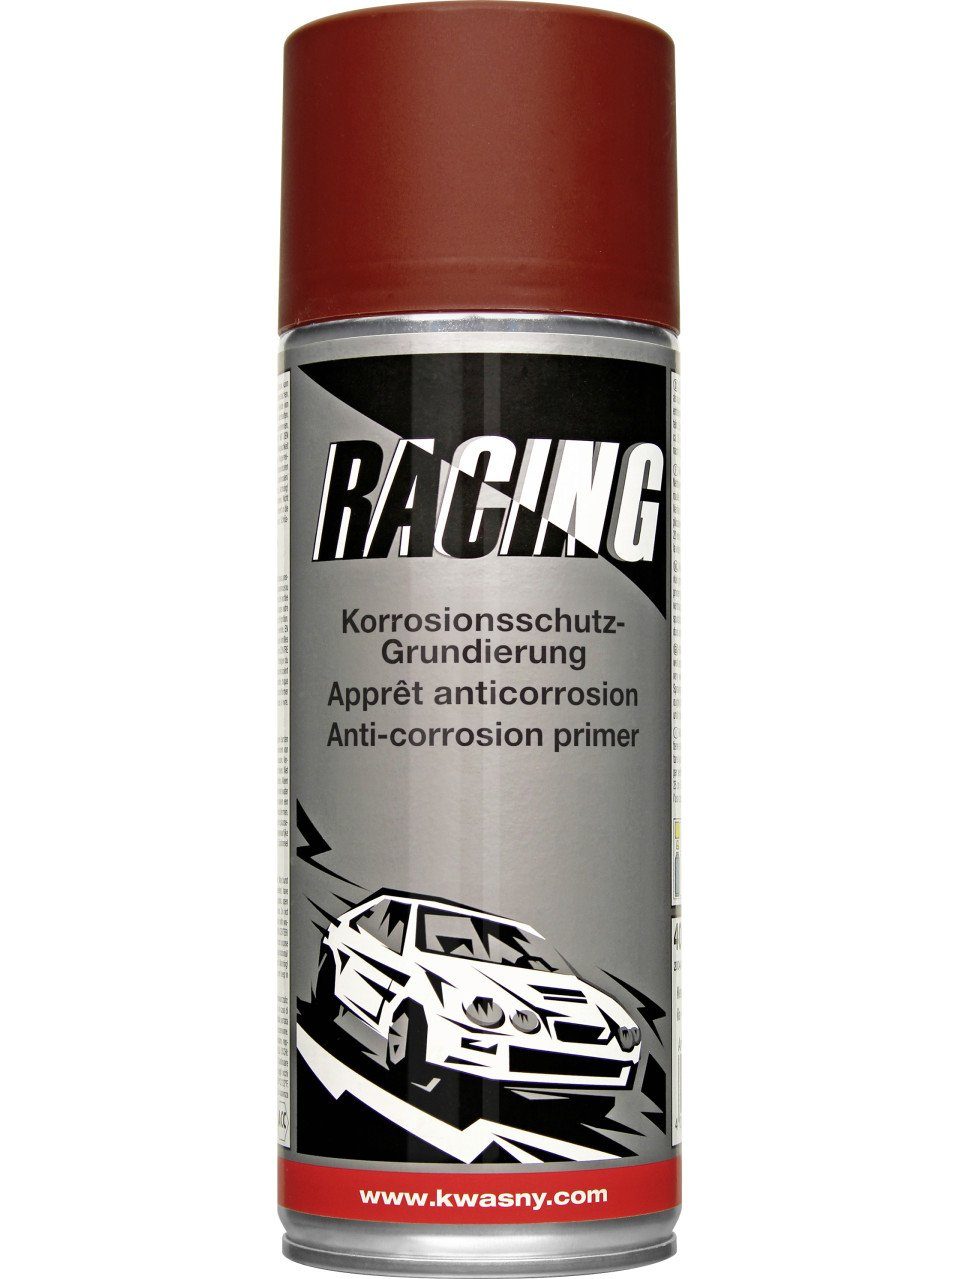 Auto-K Sprühlack Korrosionsschutz-Grundierung Racing Auto-K